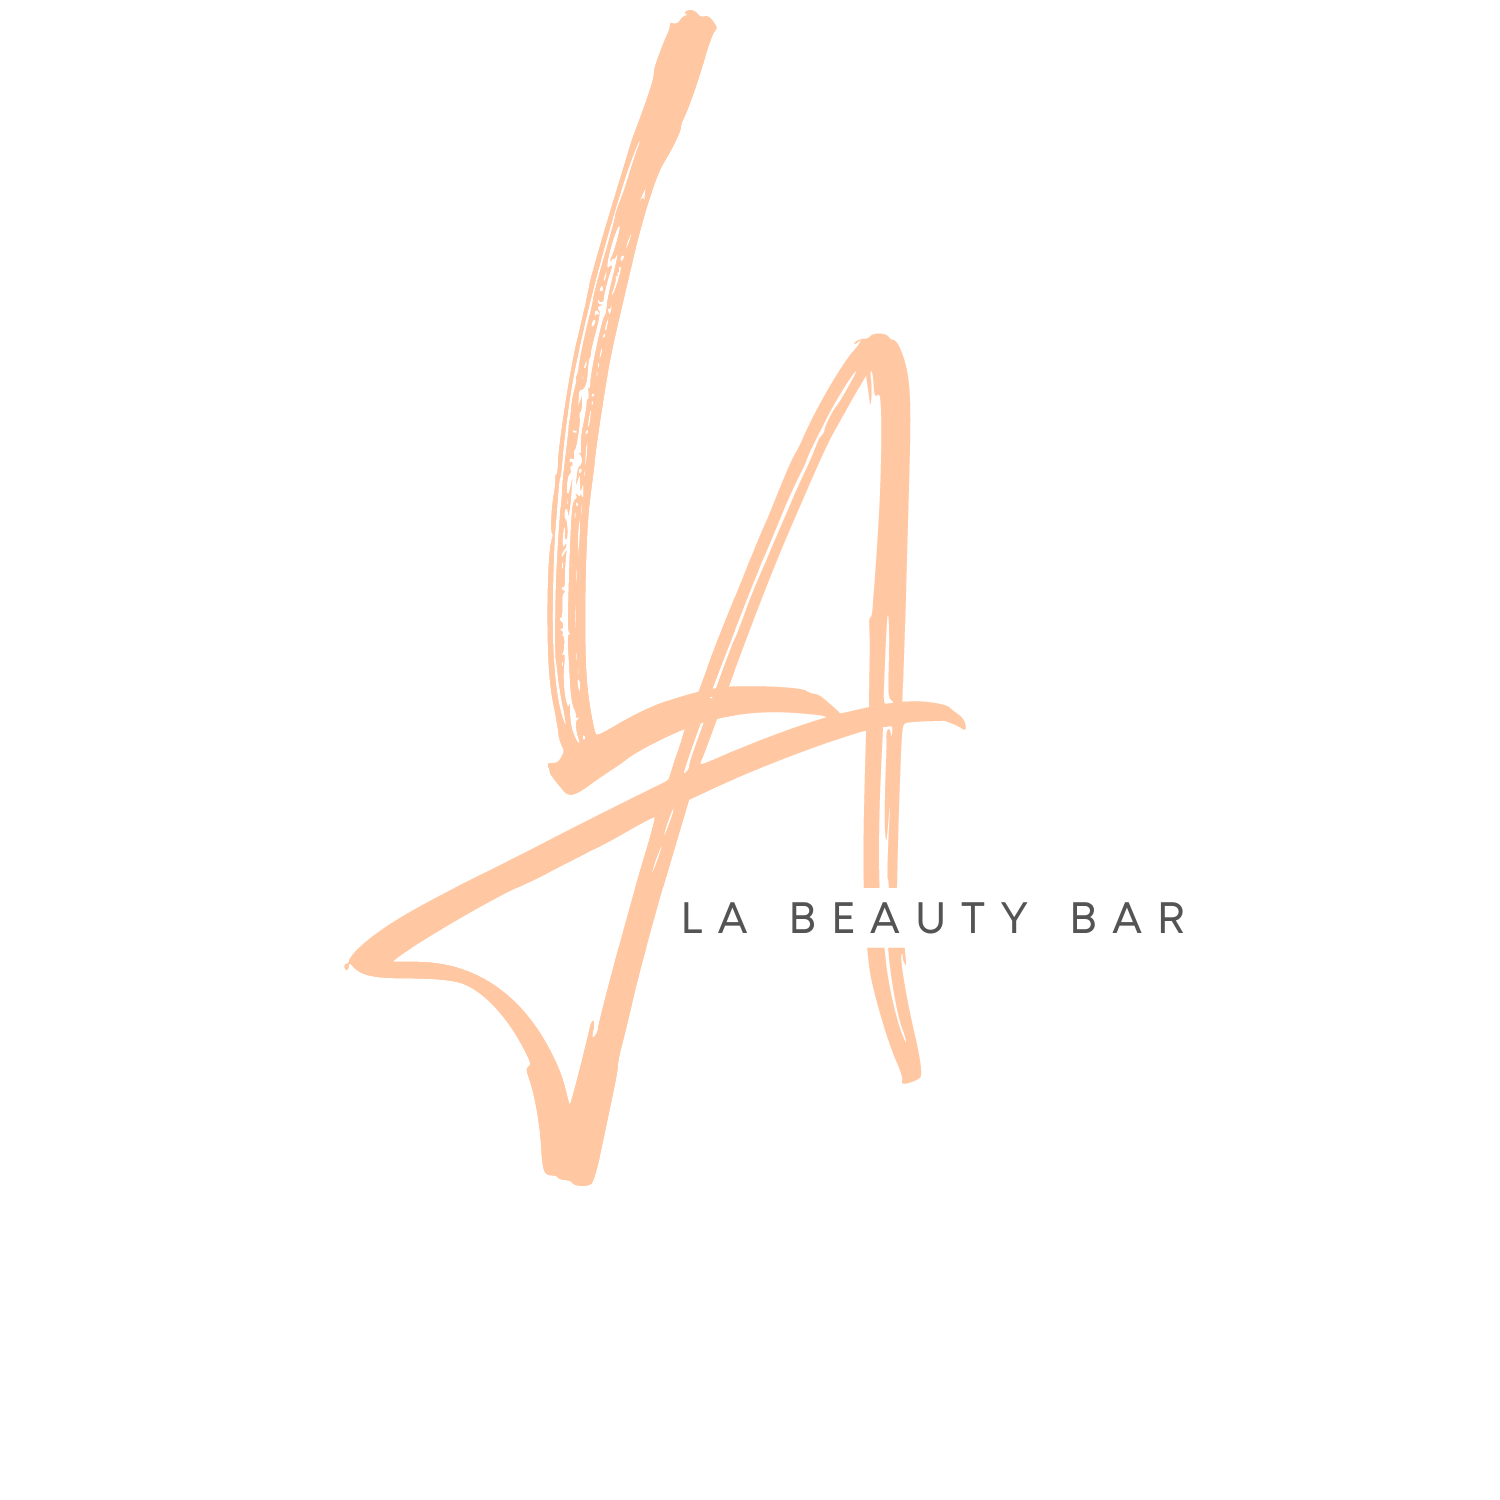 LA Beauty Bar